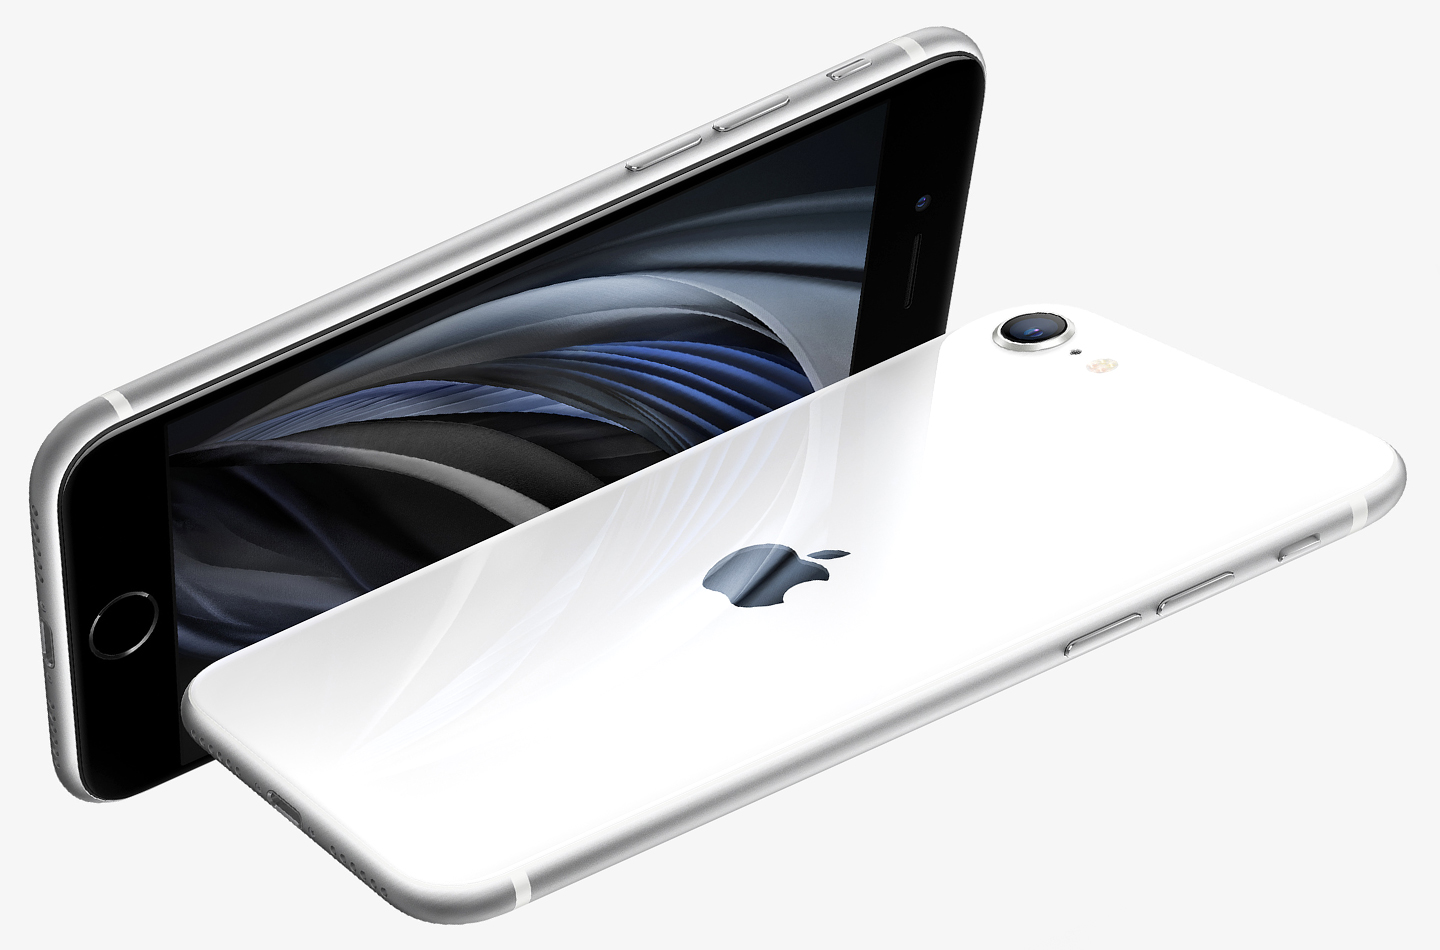 Kerel Notebook bros Refurbished iPhone SE 2020 kopen: wat zijn de voordelen? | LetsGoDigital